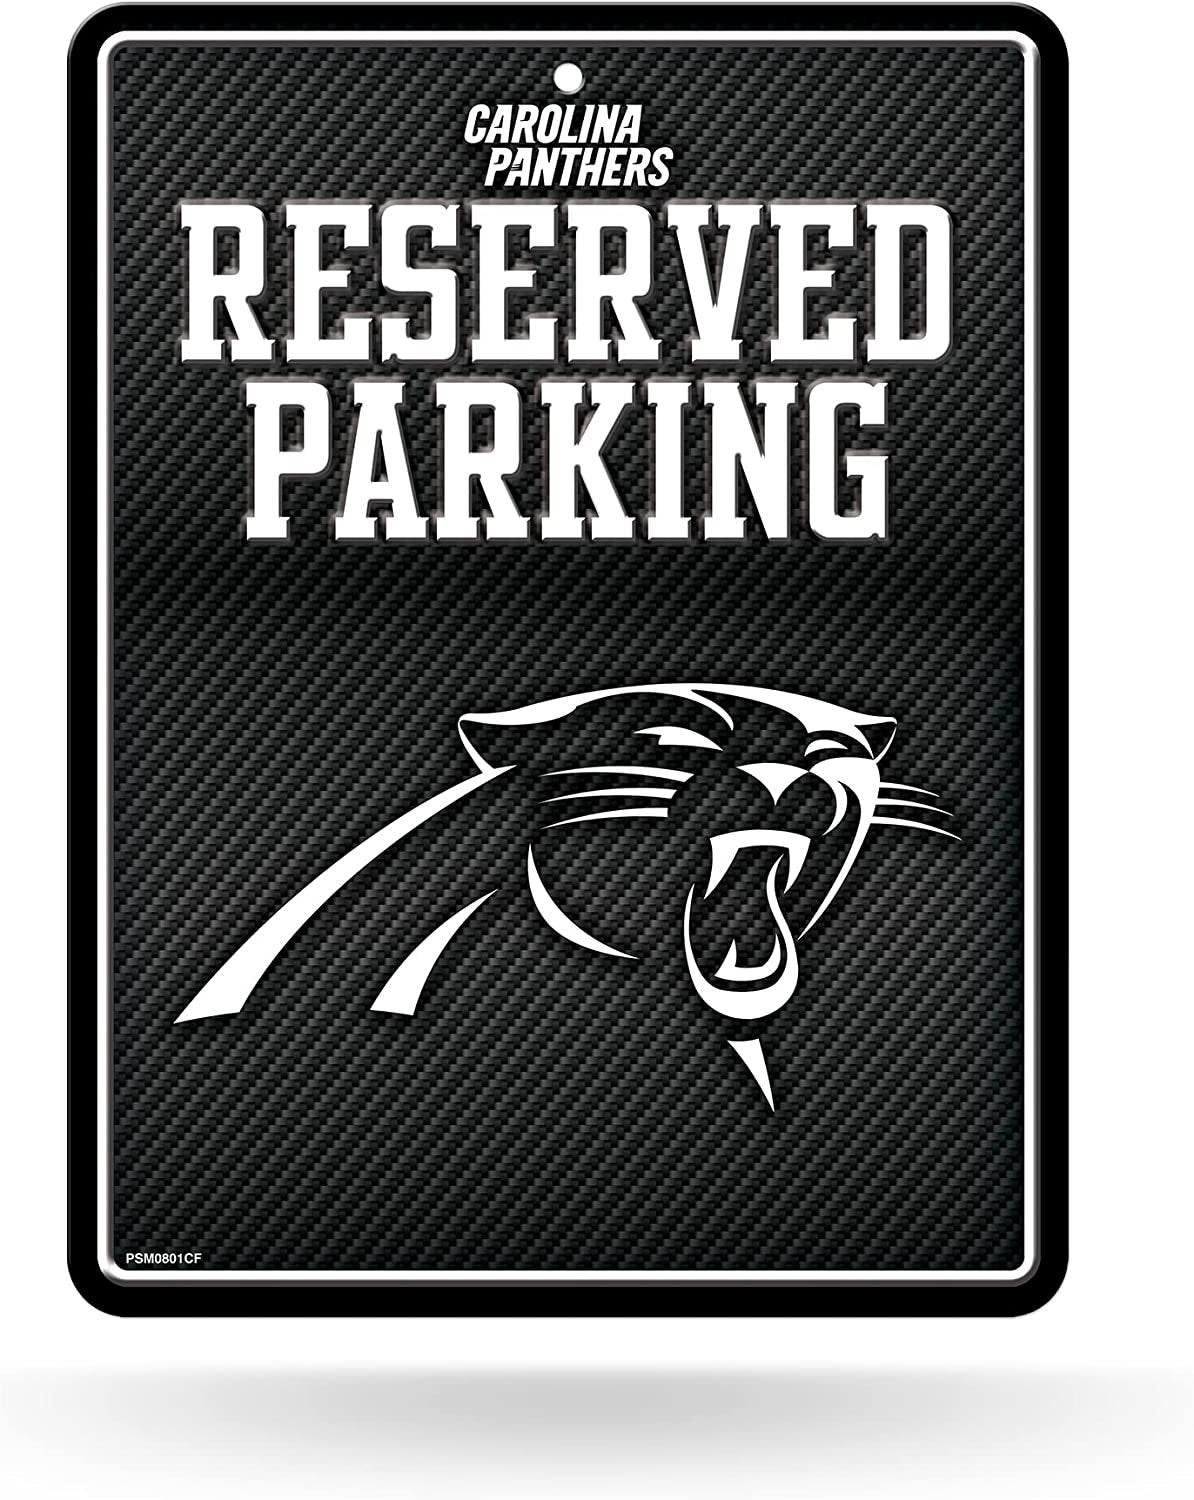 Carolina Panthers Metal Parking Novelty Wall Sign 8.5 x 11 Inch Carbon Fiber Design